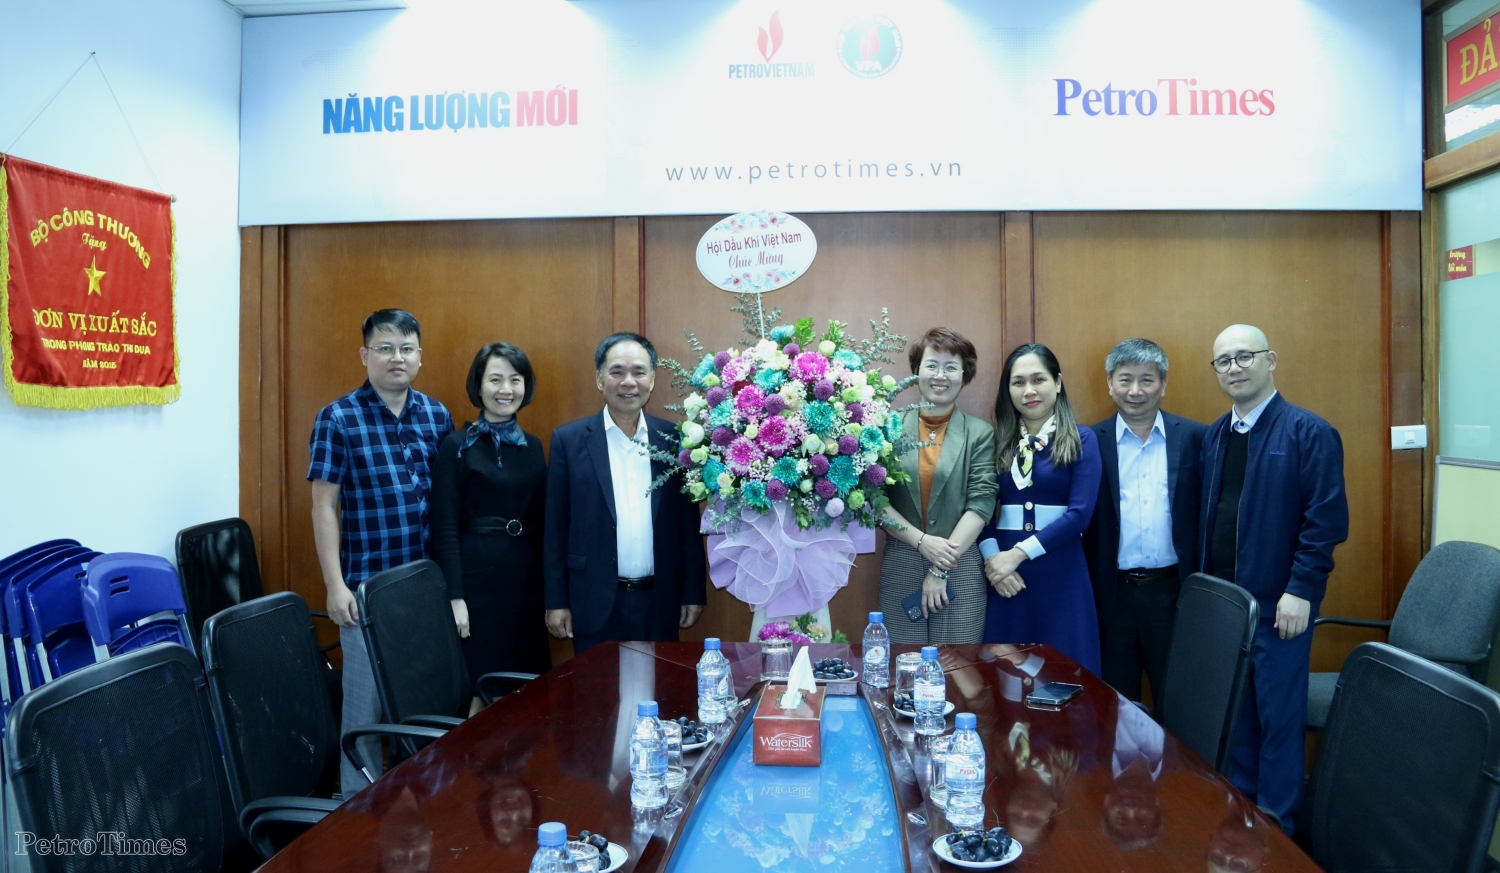 Lãnh đạo Hội Dầu khí Việt Nam chúc mừng Tạp chí Năng lượng Mới - PetroTimes nhân kỷ niệm 12 năm Ngày ra số đầu tiên